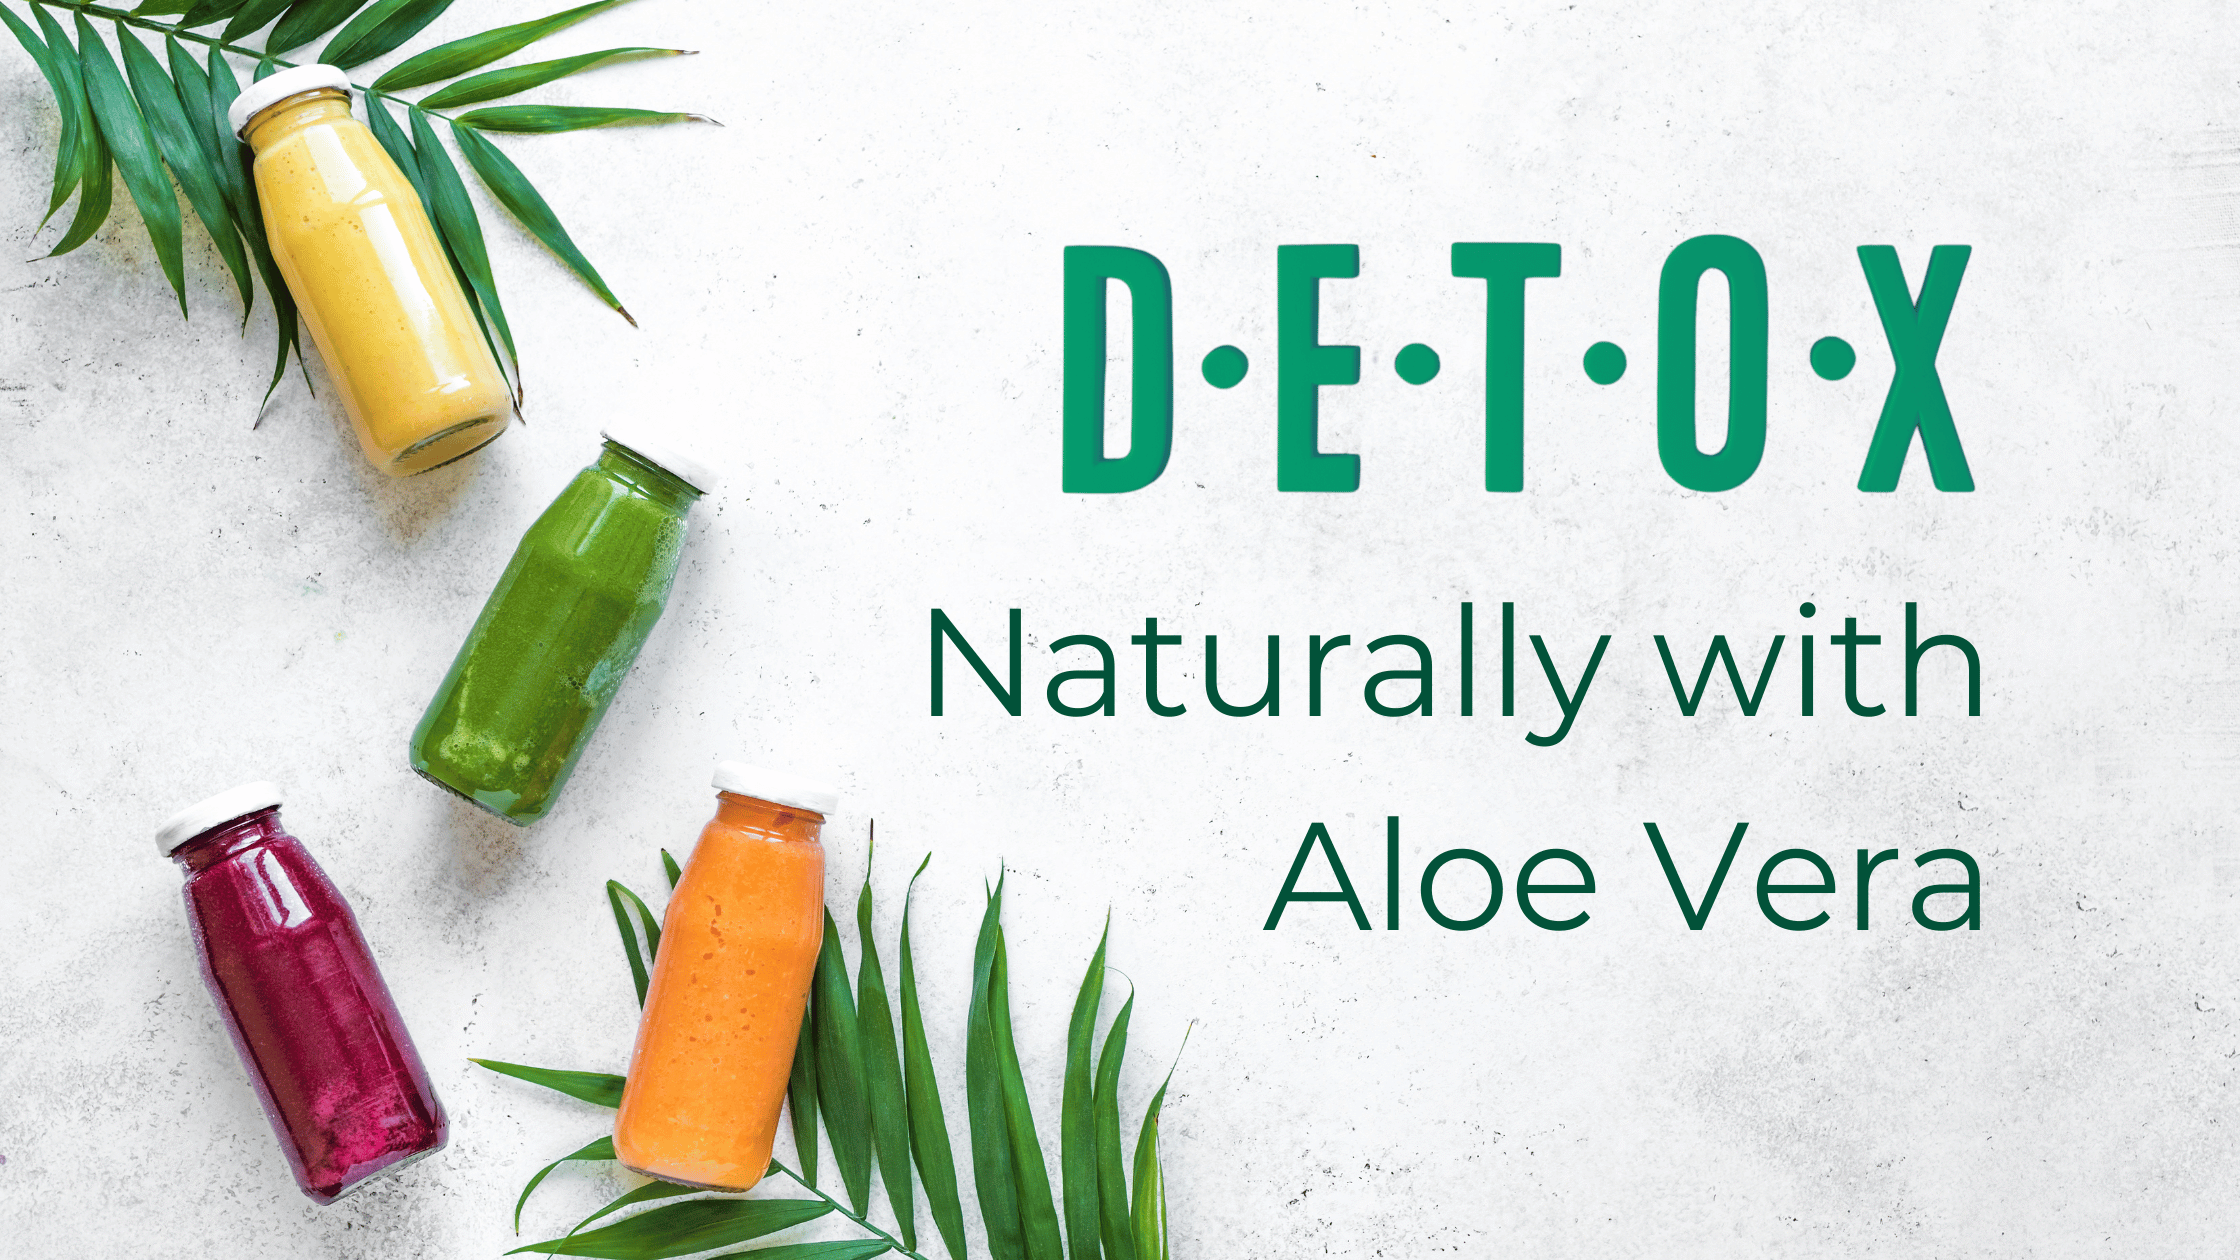 Detoxify Your Body Naturally with Aloe Vera Juice